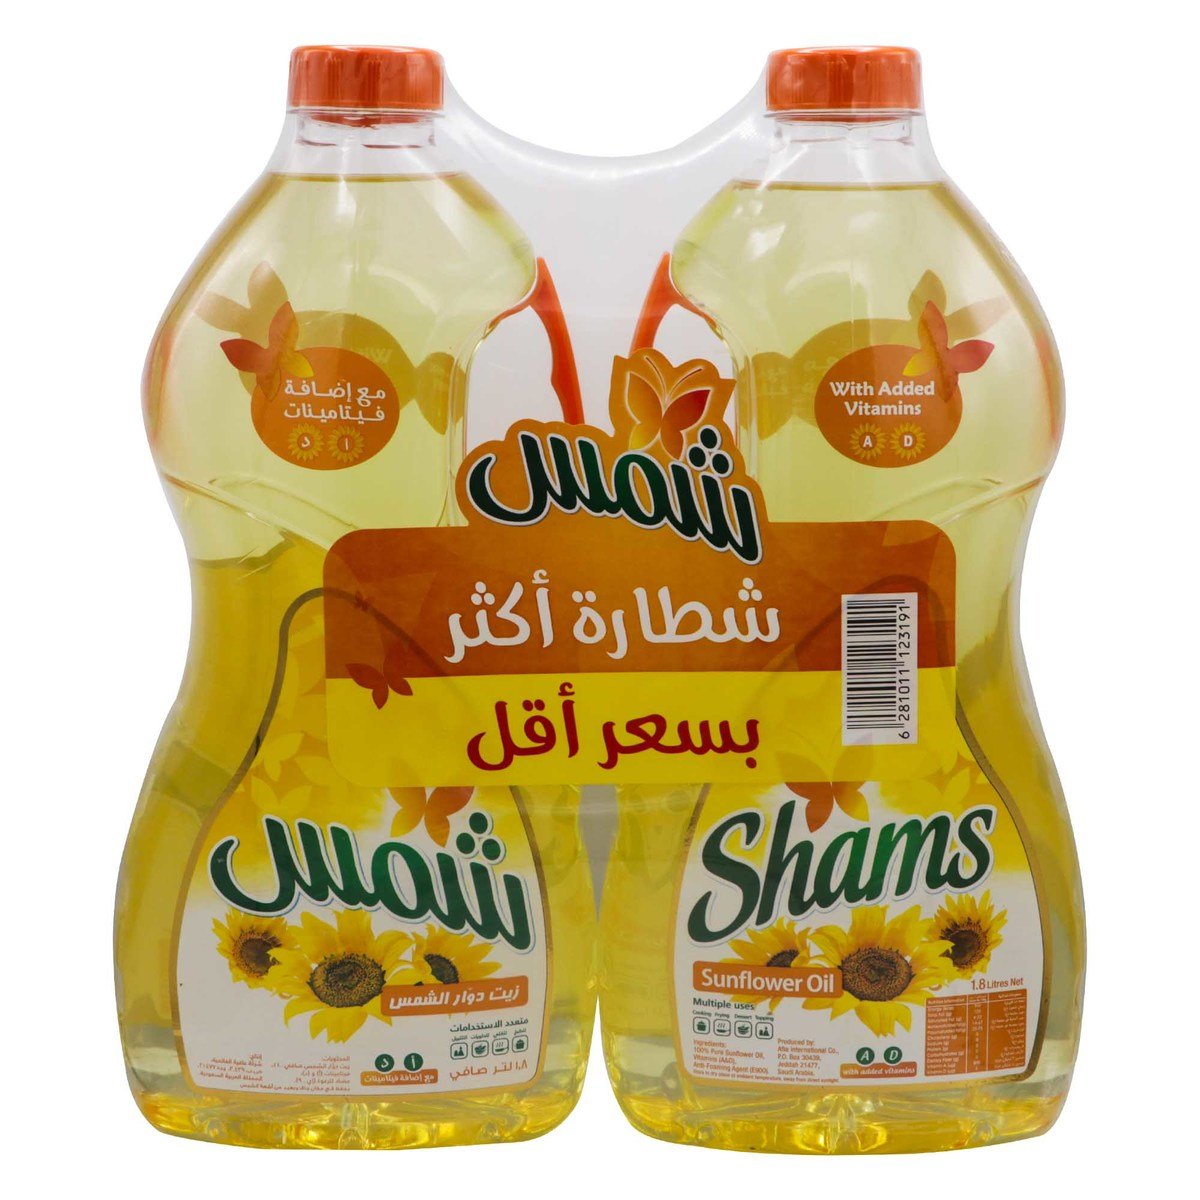 Shams Sunflower Oil 2 x 1.8 Litres